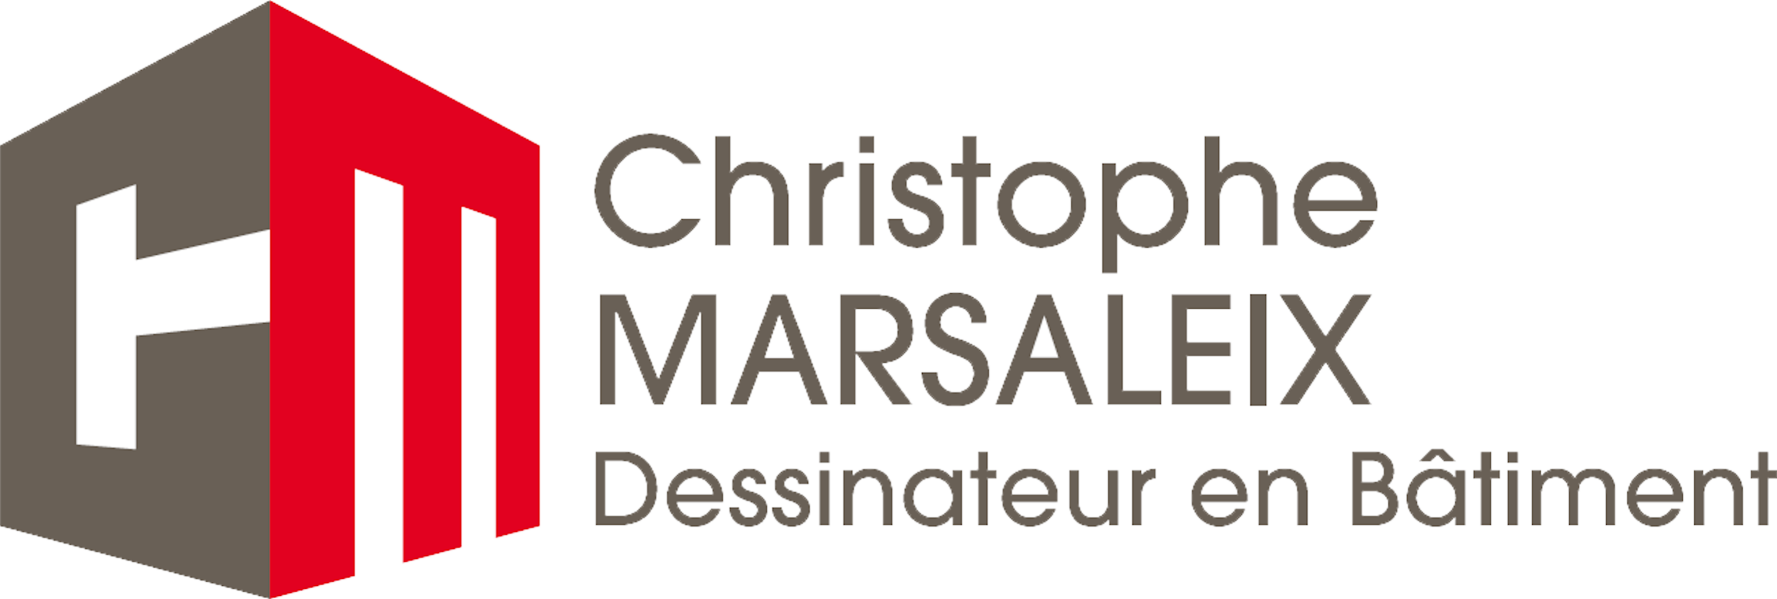 Christophe Marsaleix - Nos services en vidéo